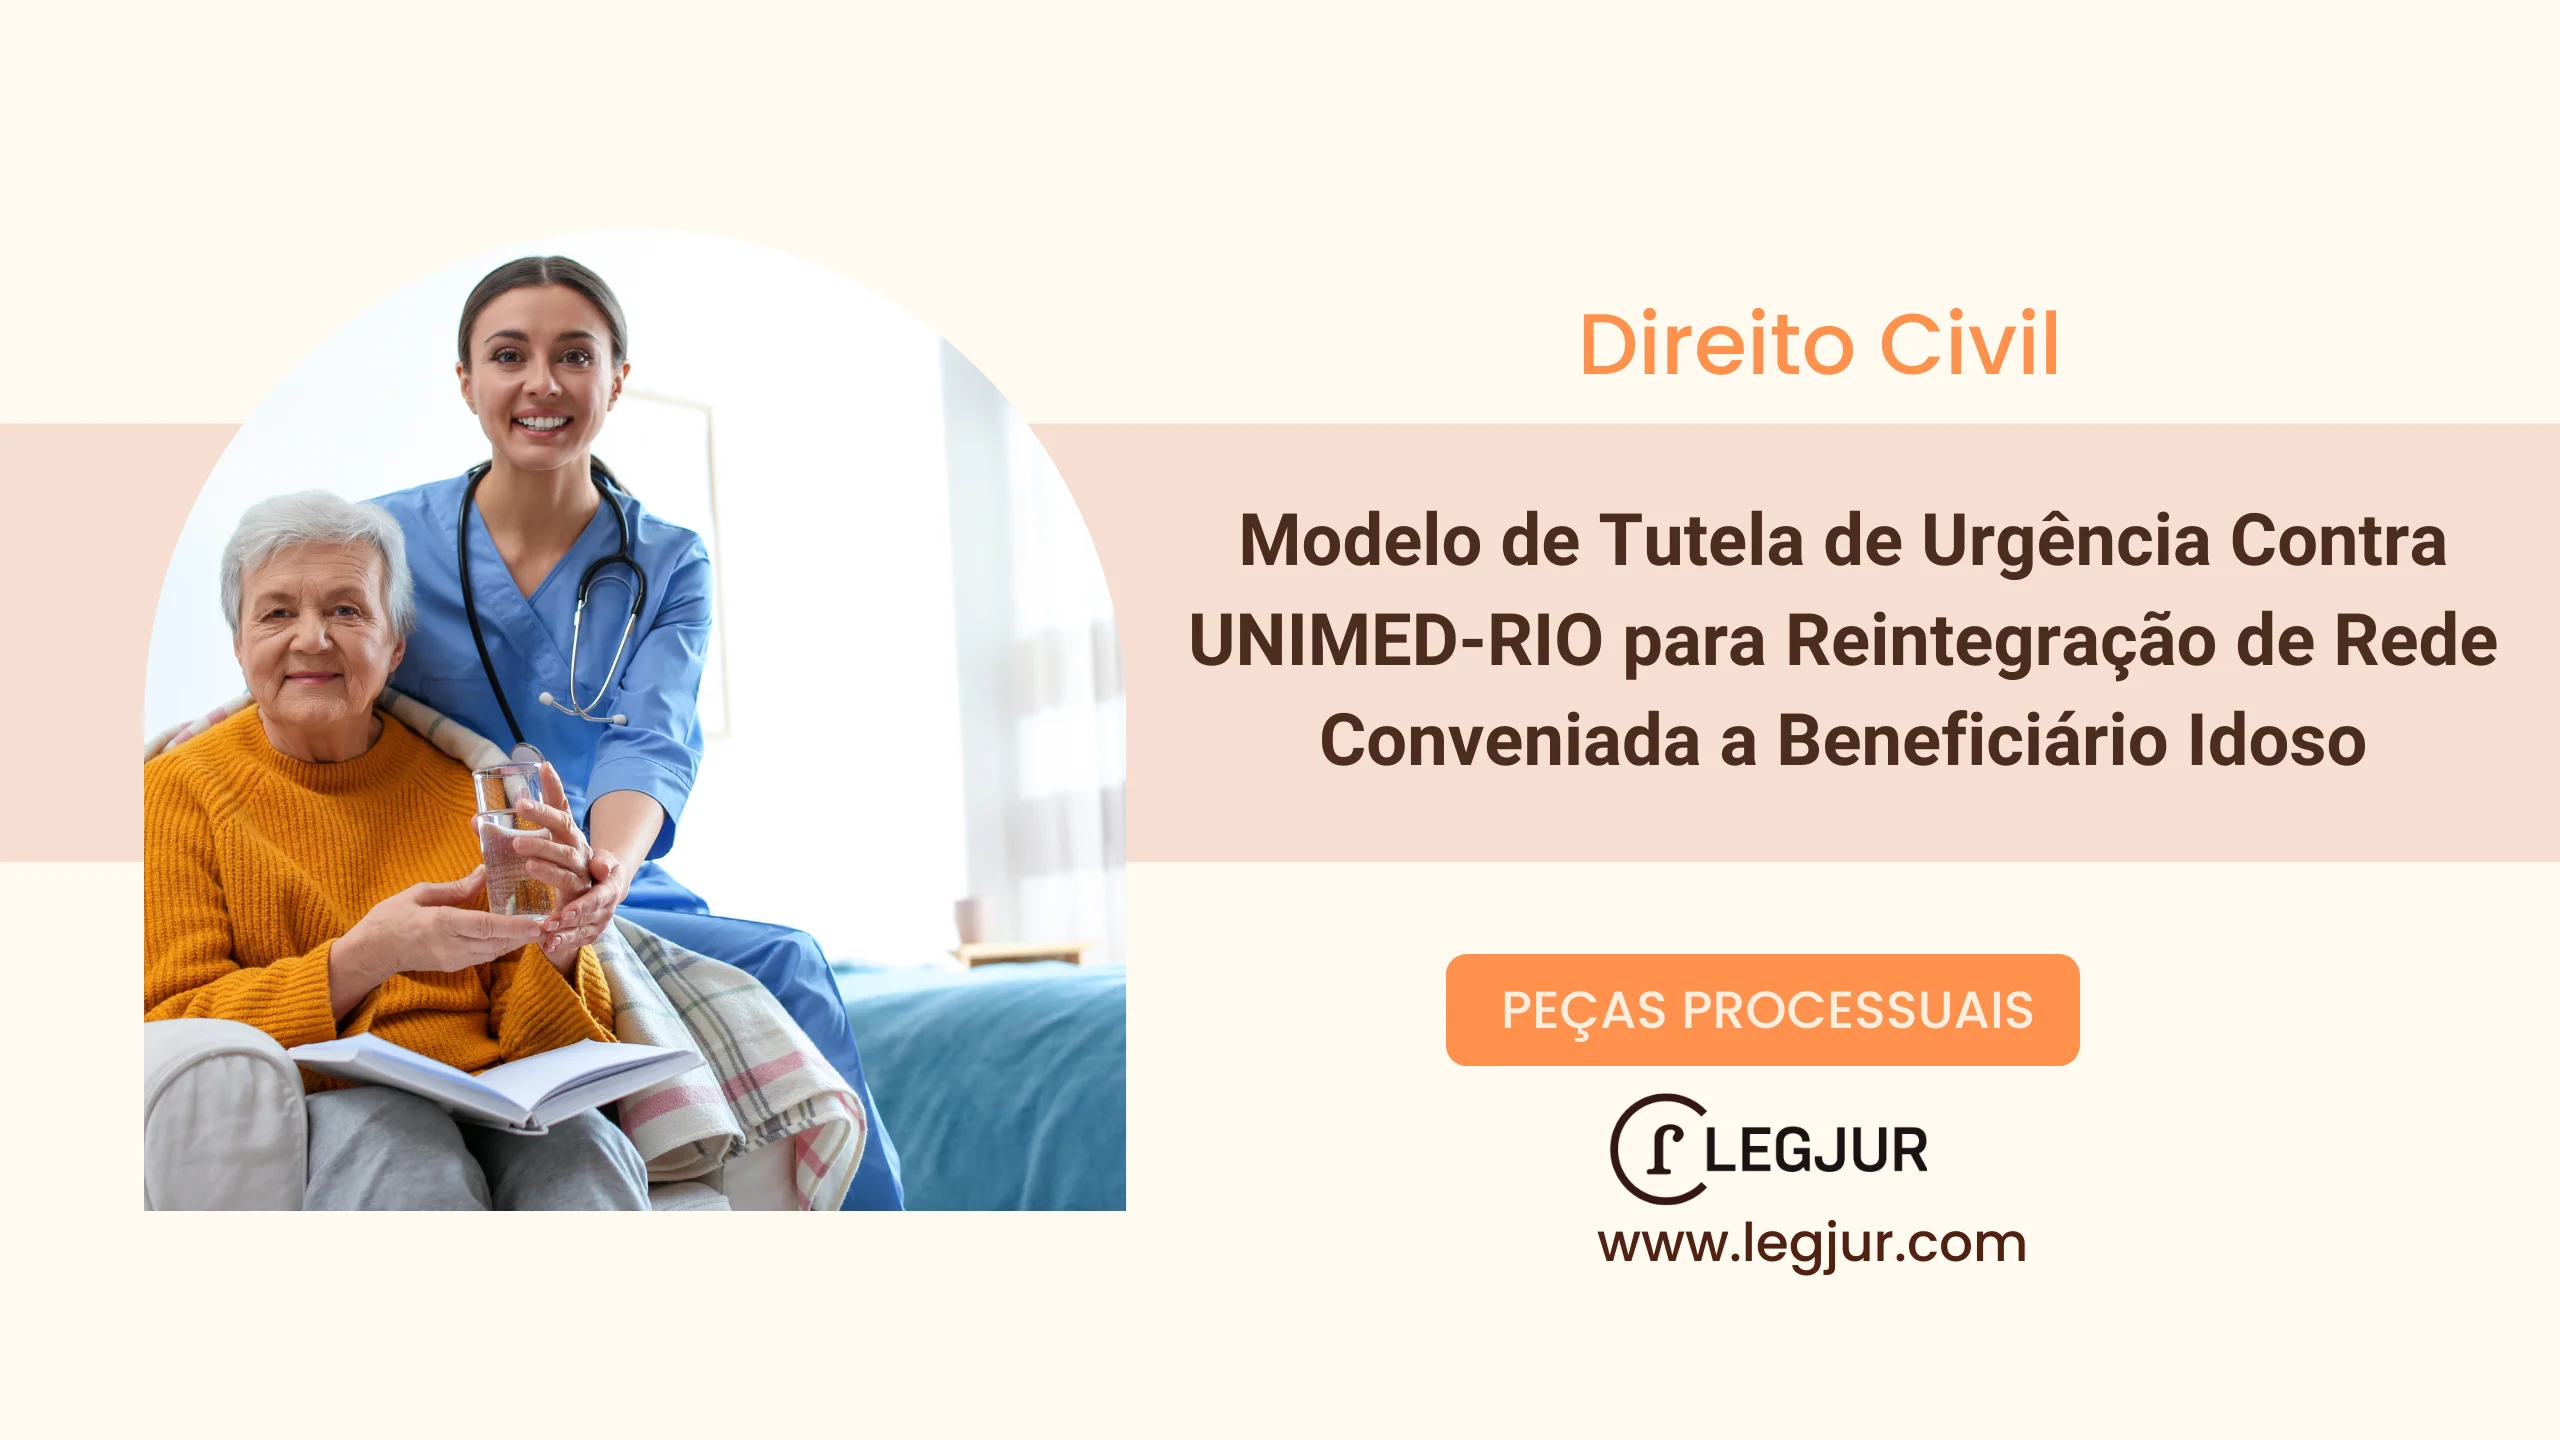 Modelo de Tutela de Urgência Contra UNIMED-RIO para Reintegração de Rede Conveniada a Beneficiário Idoso